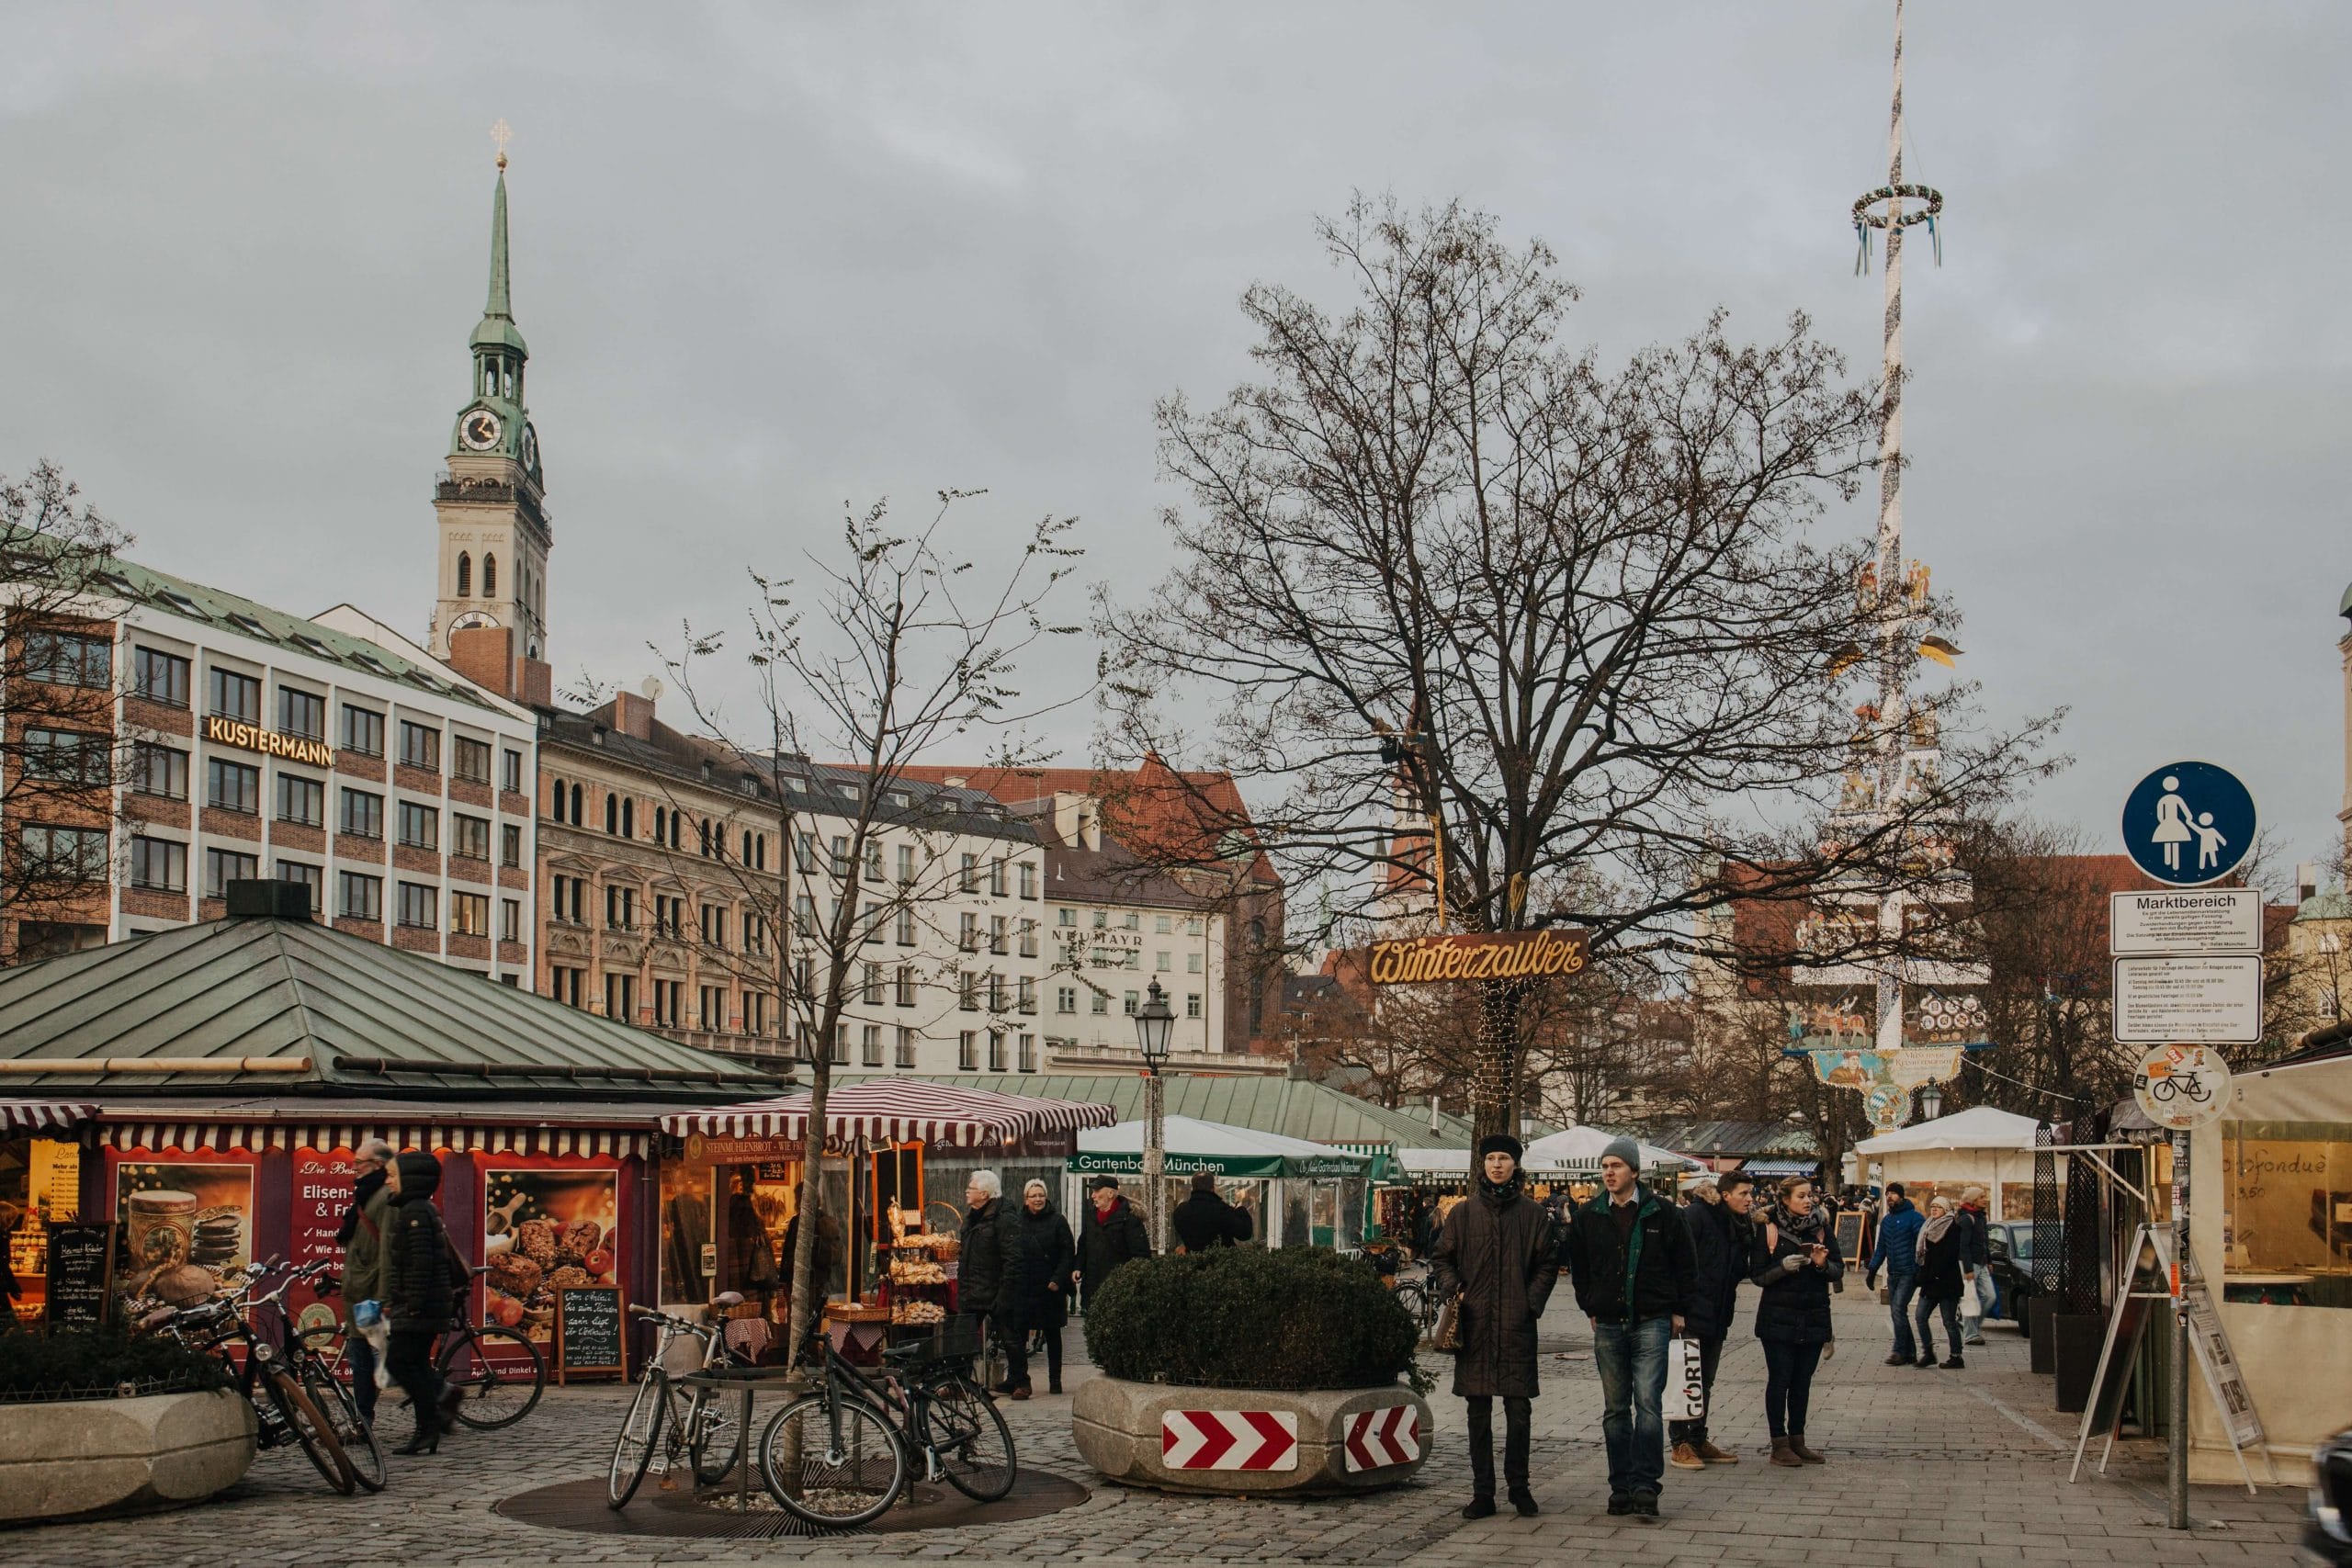 Der Münchner Viktualienmarkt ist in die Jahre gekommen und bedarf einer Sanierung. (Foto: Alisa Anton/Unsplash)